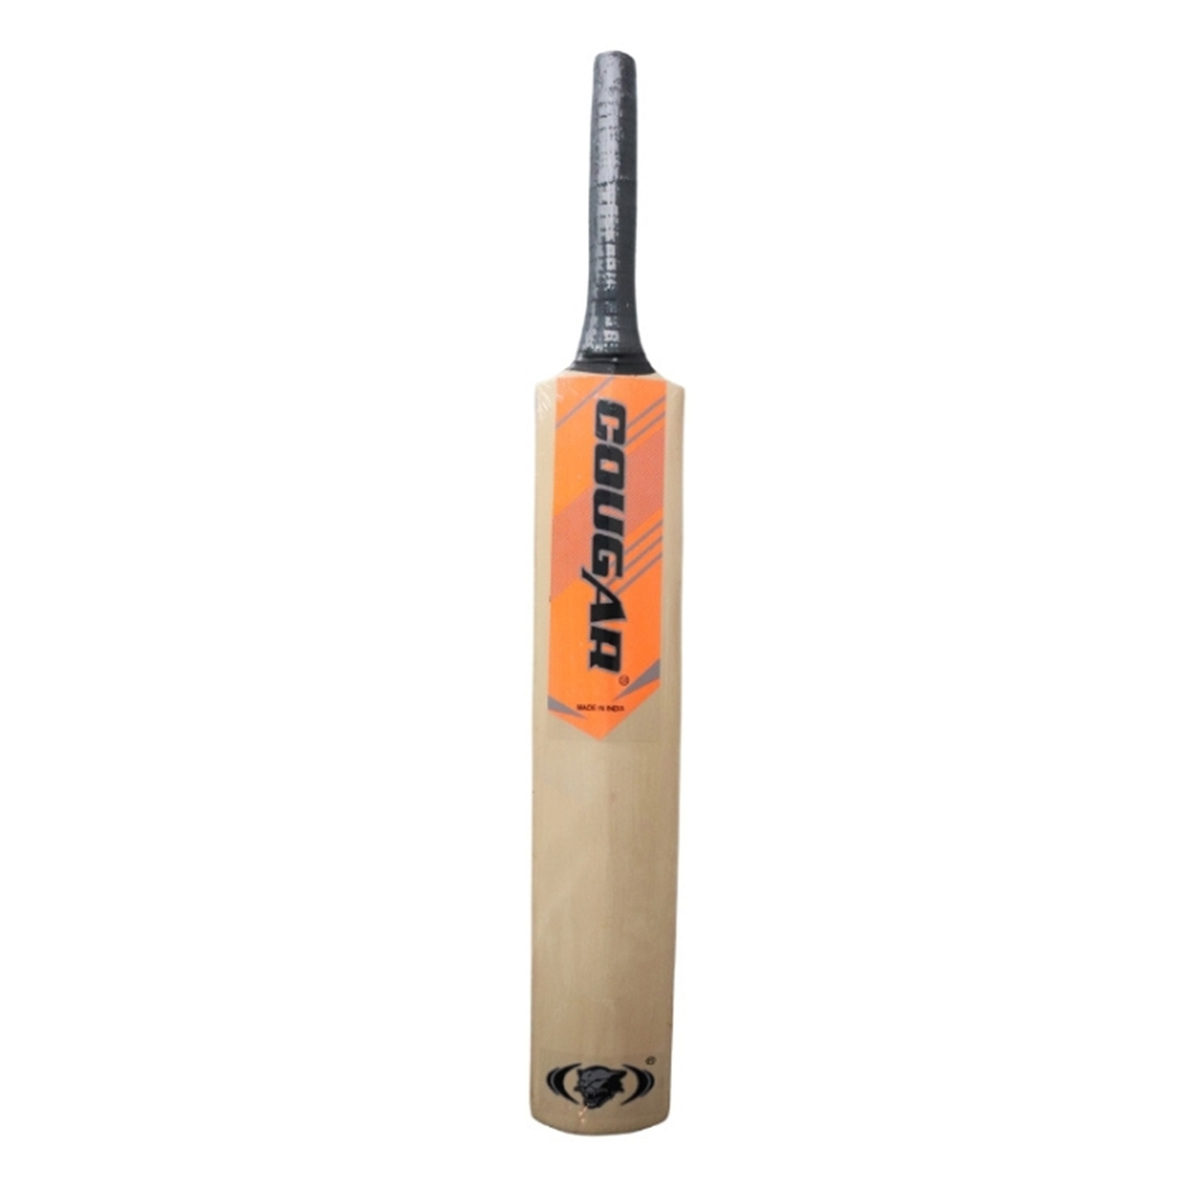 Cougar Cricket Bat 4 CK-116 4